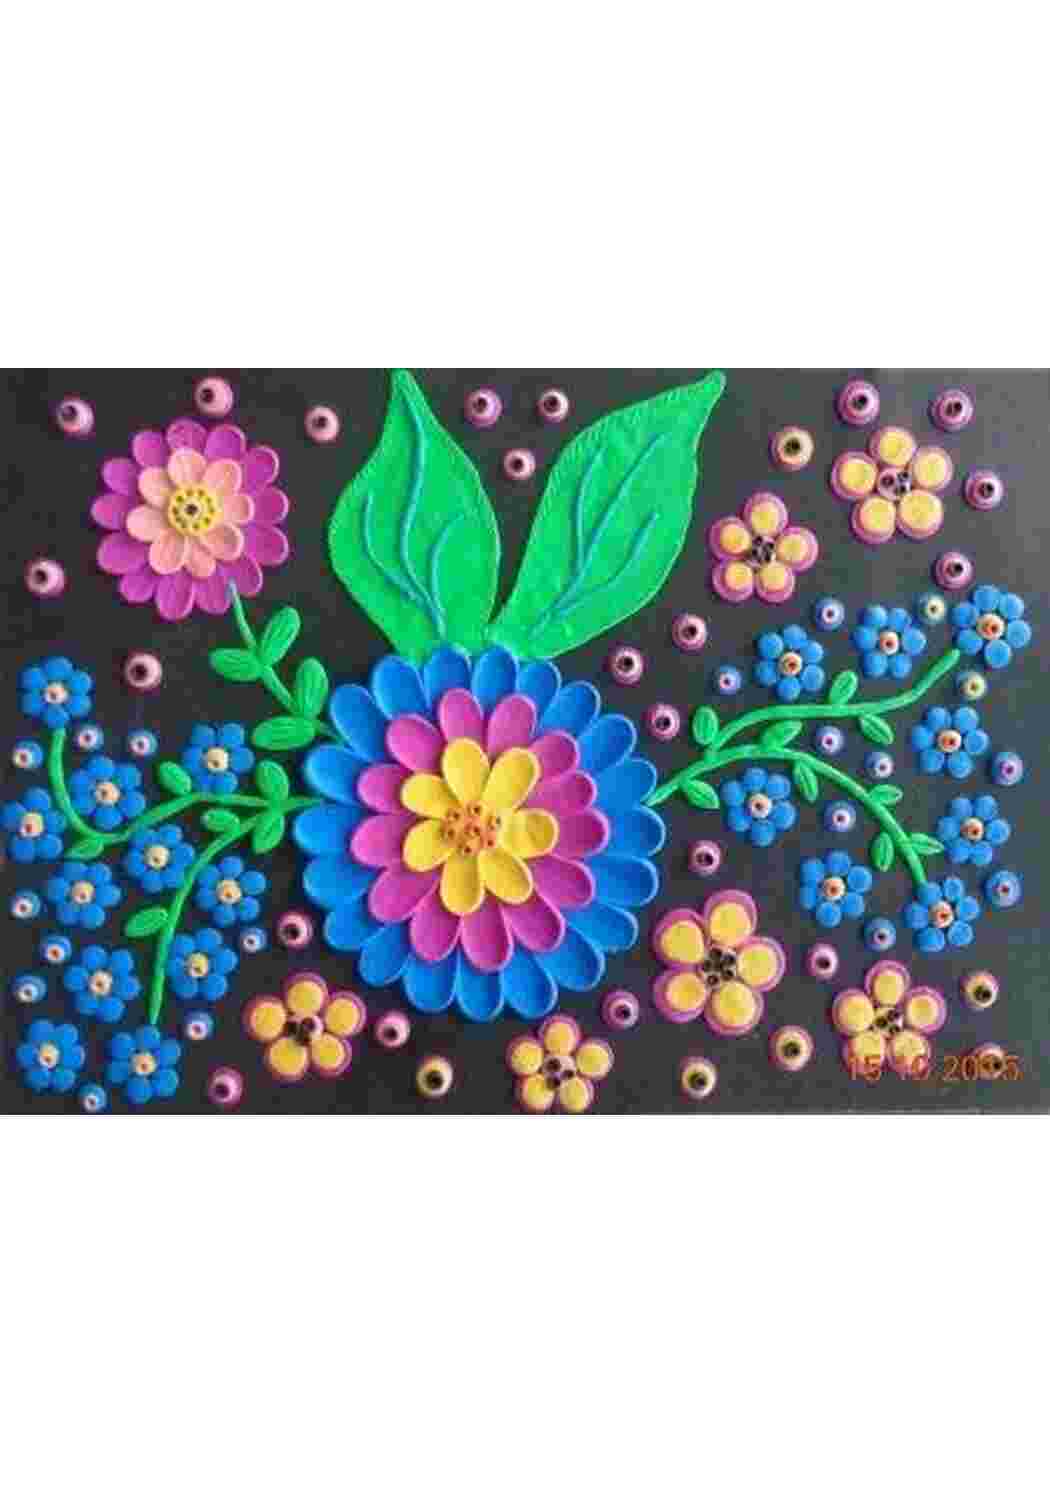 Раскраски Идеи для лепки цветов из пластилина Задания для творческих занятий с детьми. Идеи как лепить с детьми